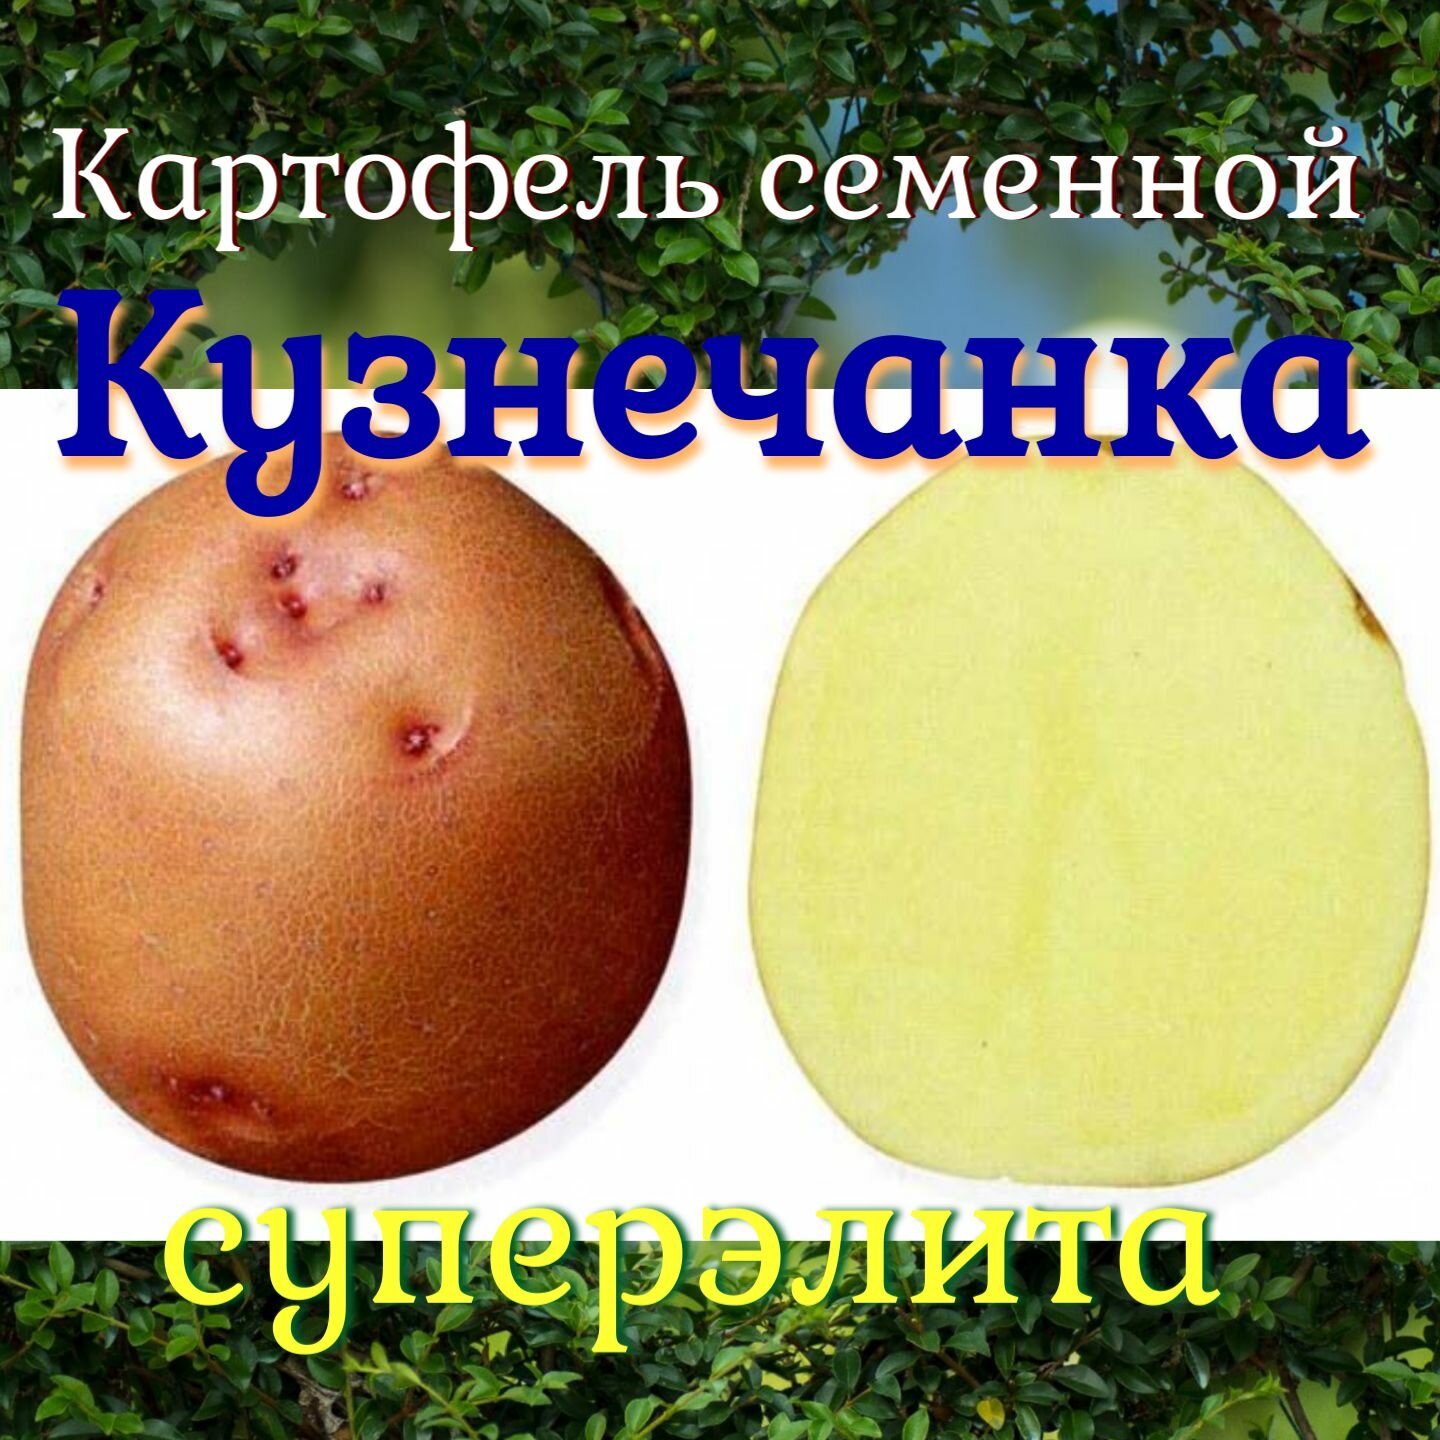 Семенной селекционный картофель Кузнечанка Суперэлита 2 кг